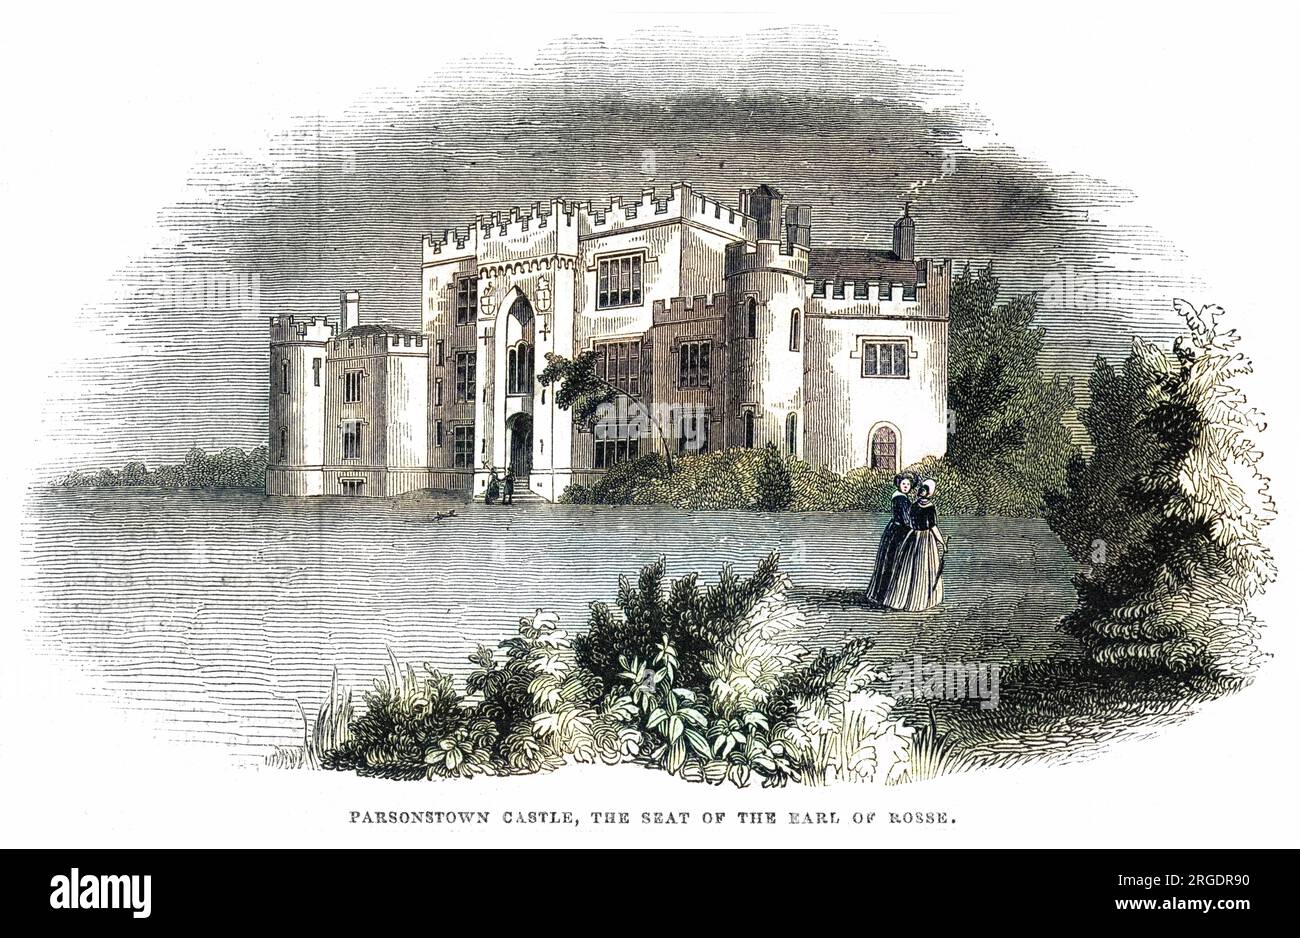 Birr Castle, Parsonstown, Irlanda, sede del conte di rosse e sede del suo osservatorio. Foto Stock